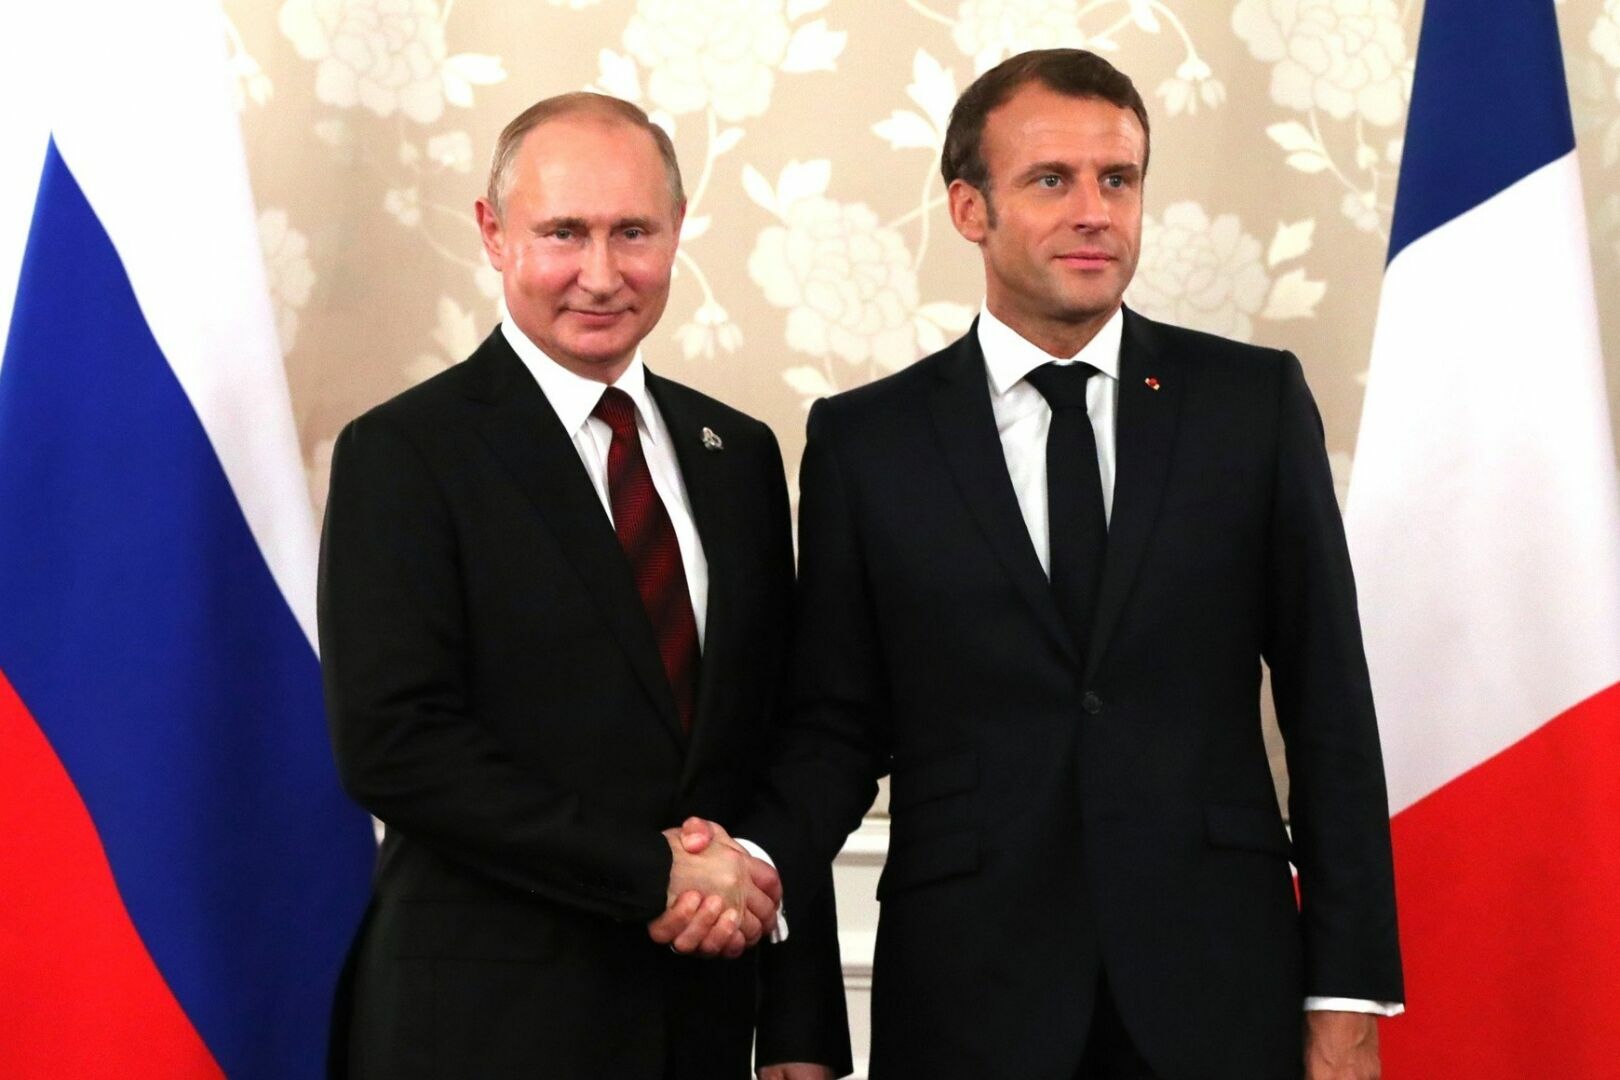 Владимир Путин и Эммануэль Макрон обсудят напряженность в Европе